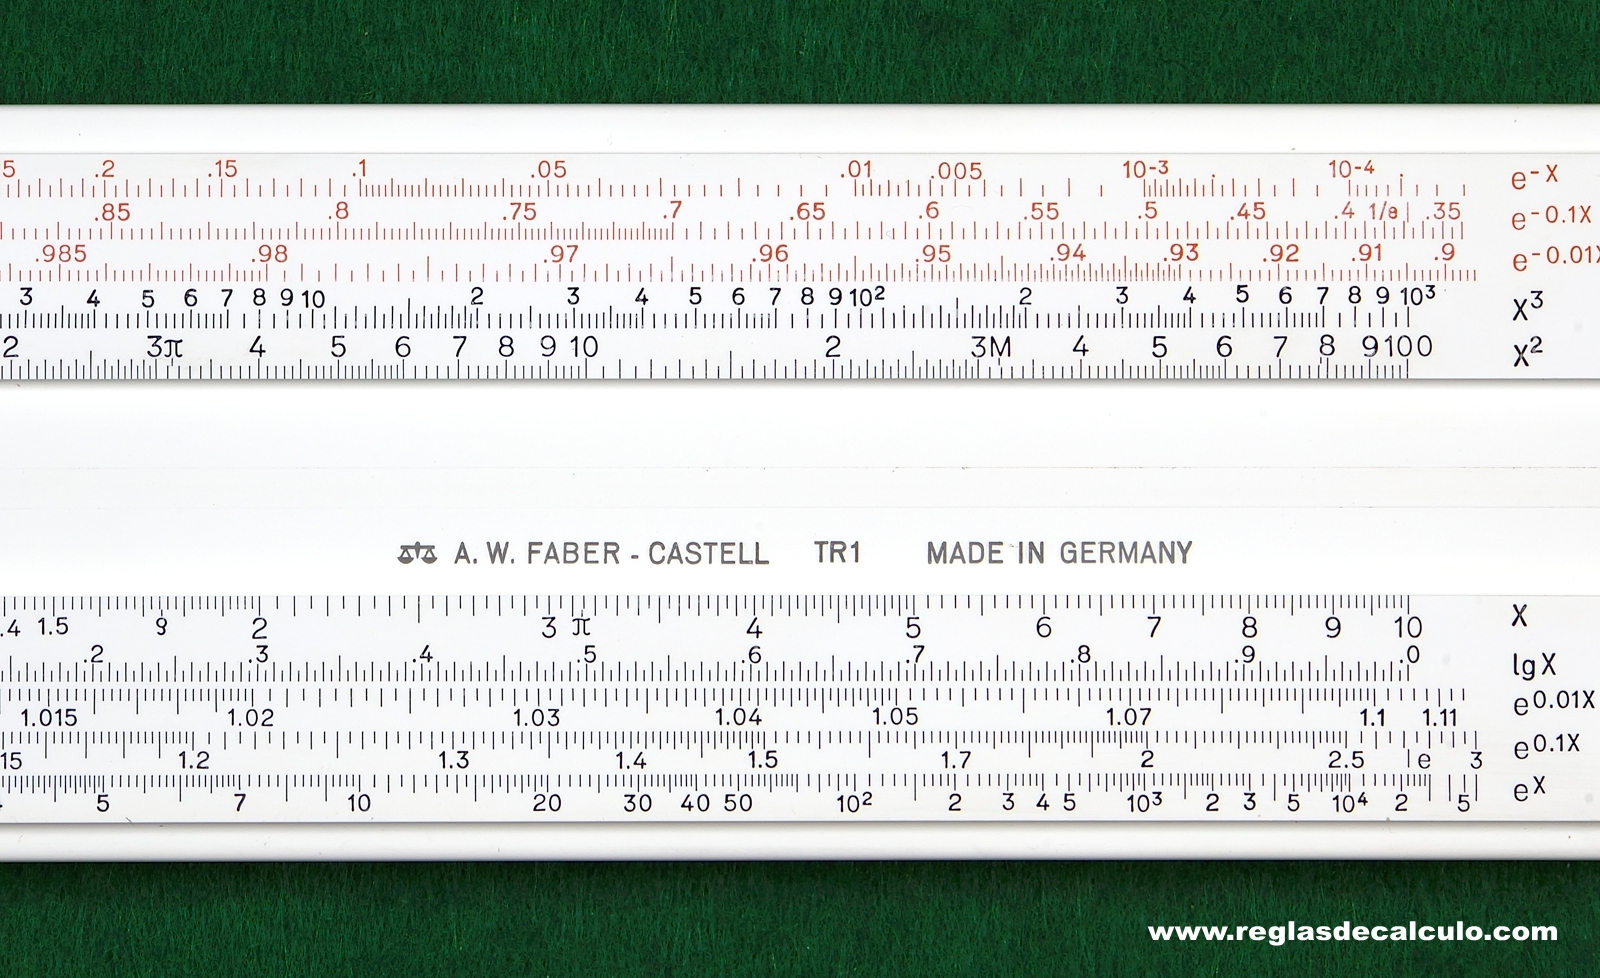 Faber Castell TR1 Regla de Calculo Slide rule